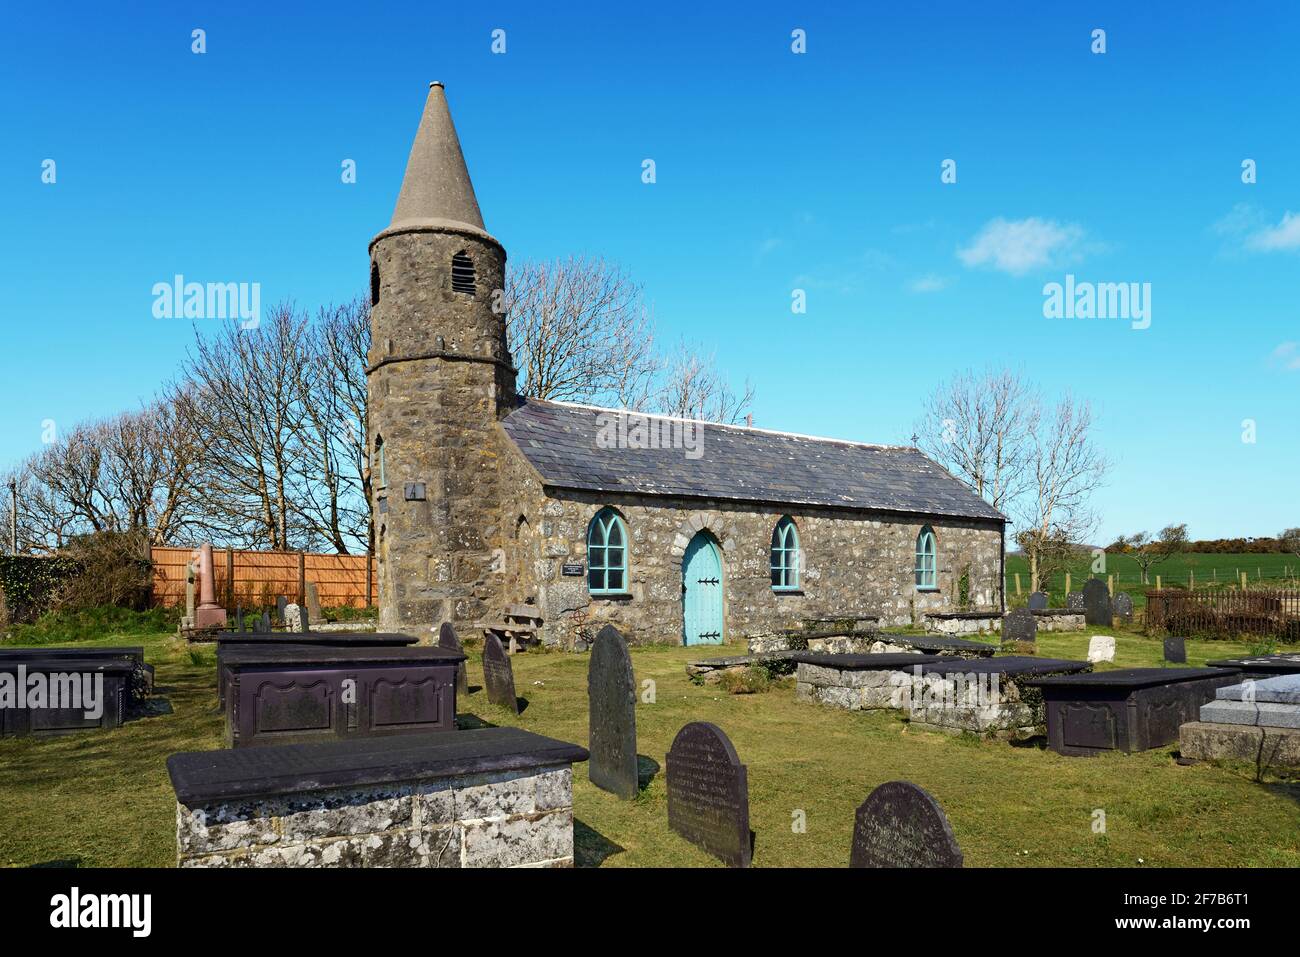 L'église St Gwynin de Llandegwning, au nord du pays de Galles, est une église primitive de style gothique qui a été reconstruite en 1840. C'est maintenant un bâtiment classé de grade II. Banque D'Images